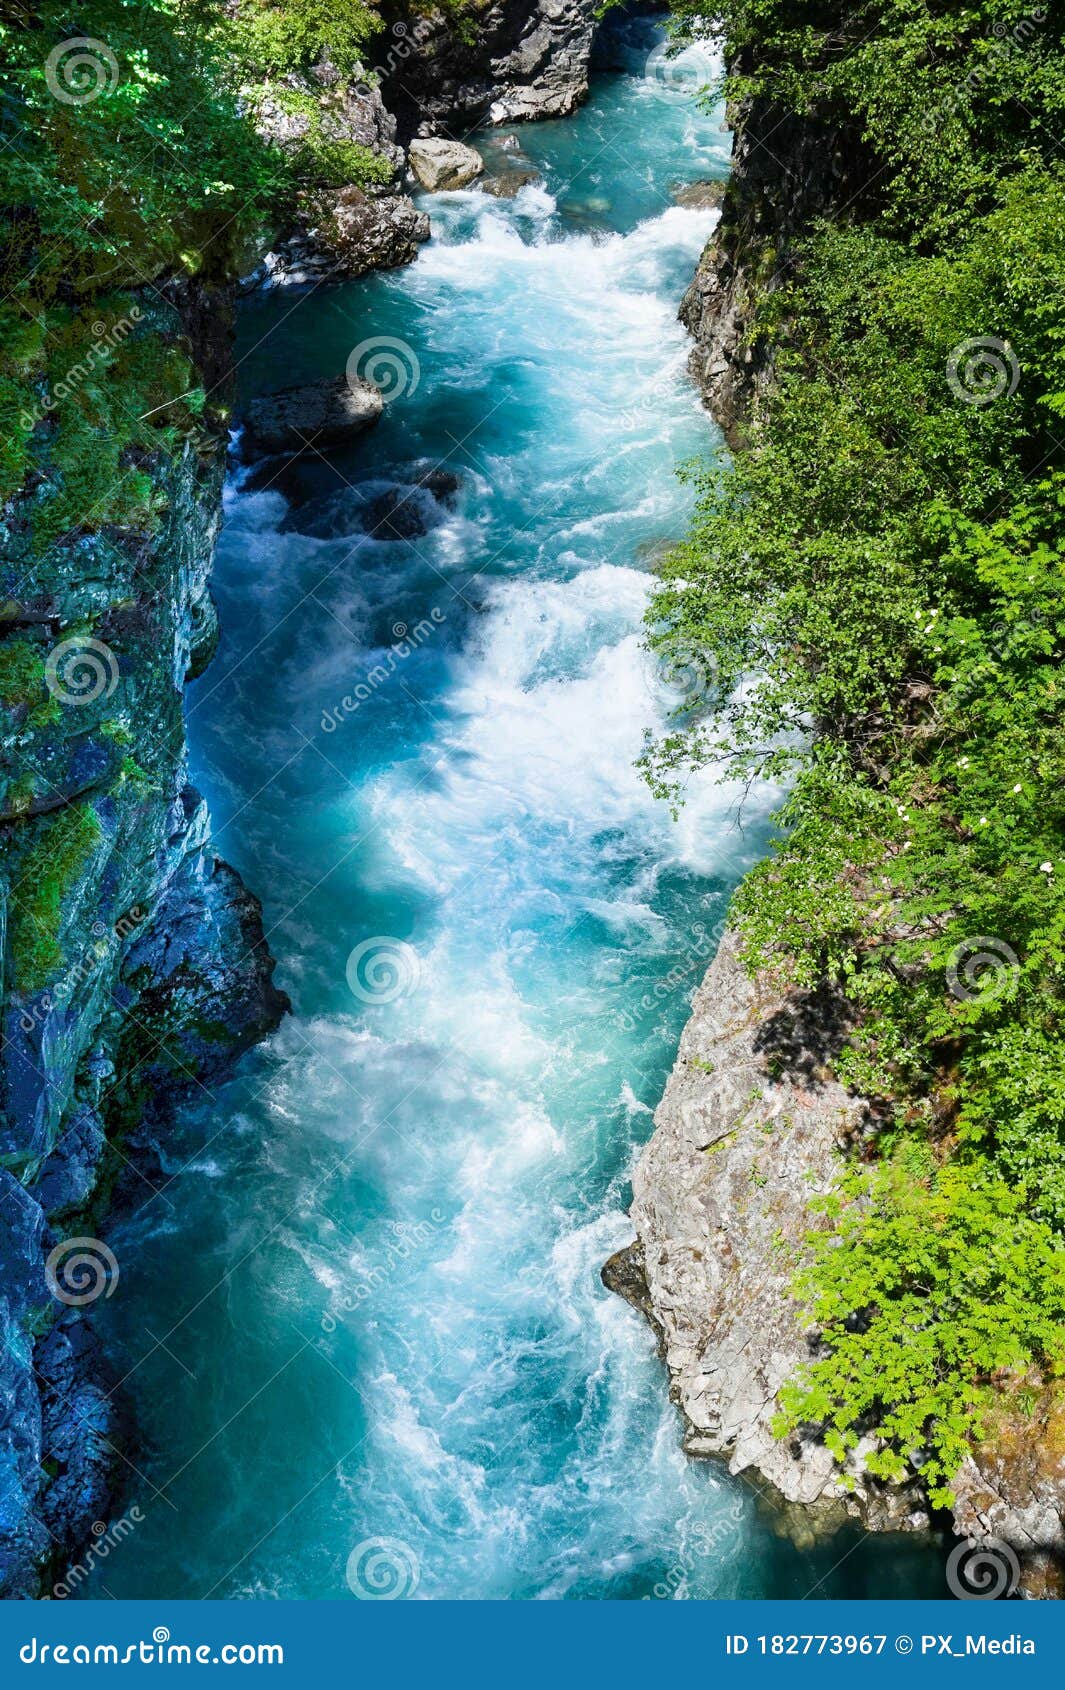 Creek in Jotunheimen Park, Norway, Scandinavia Stock Image - Image of ...